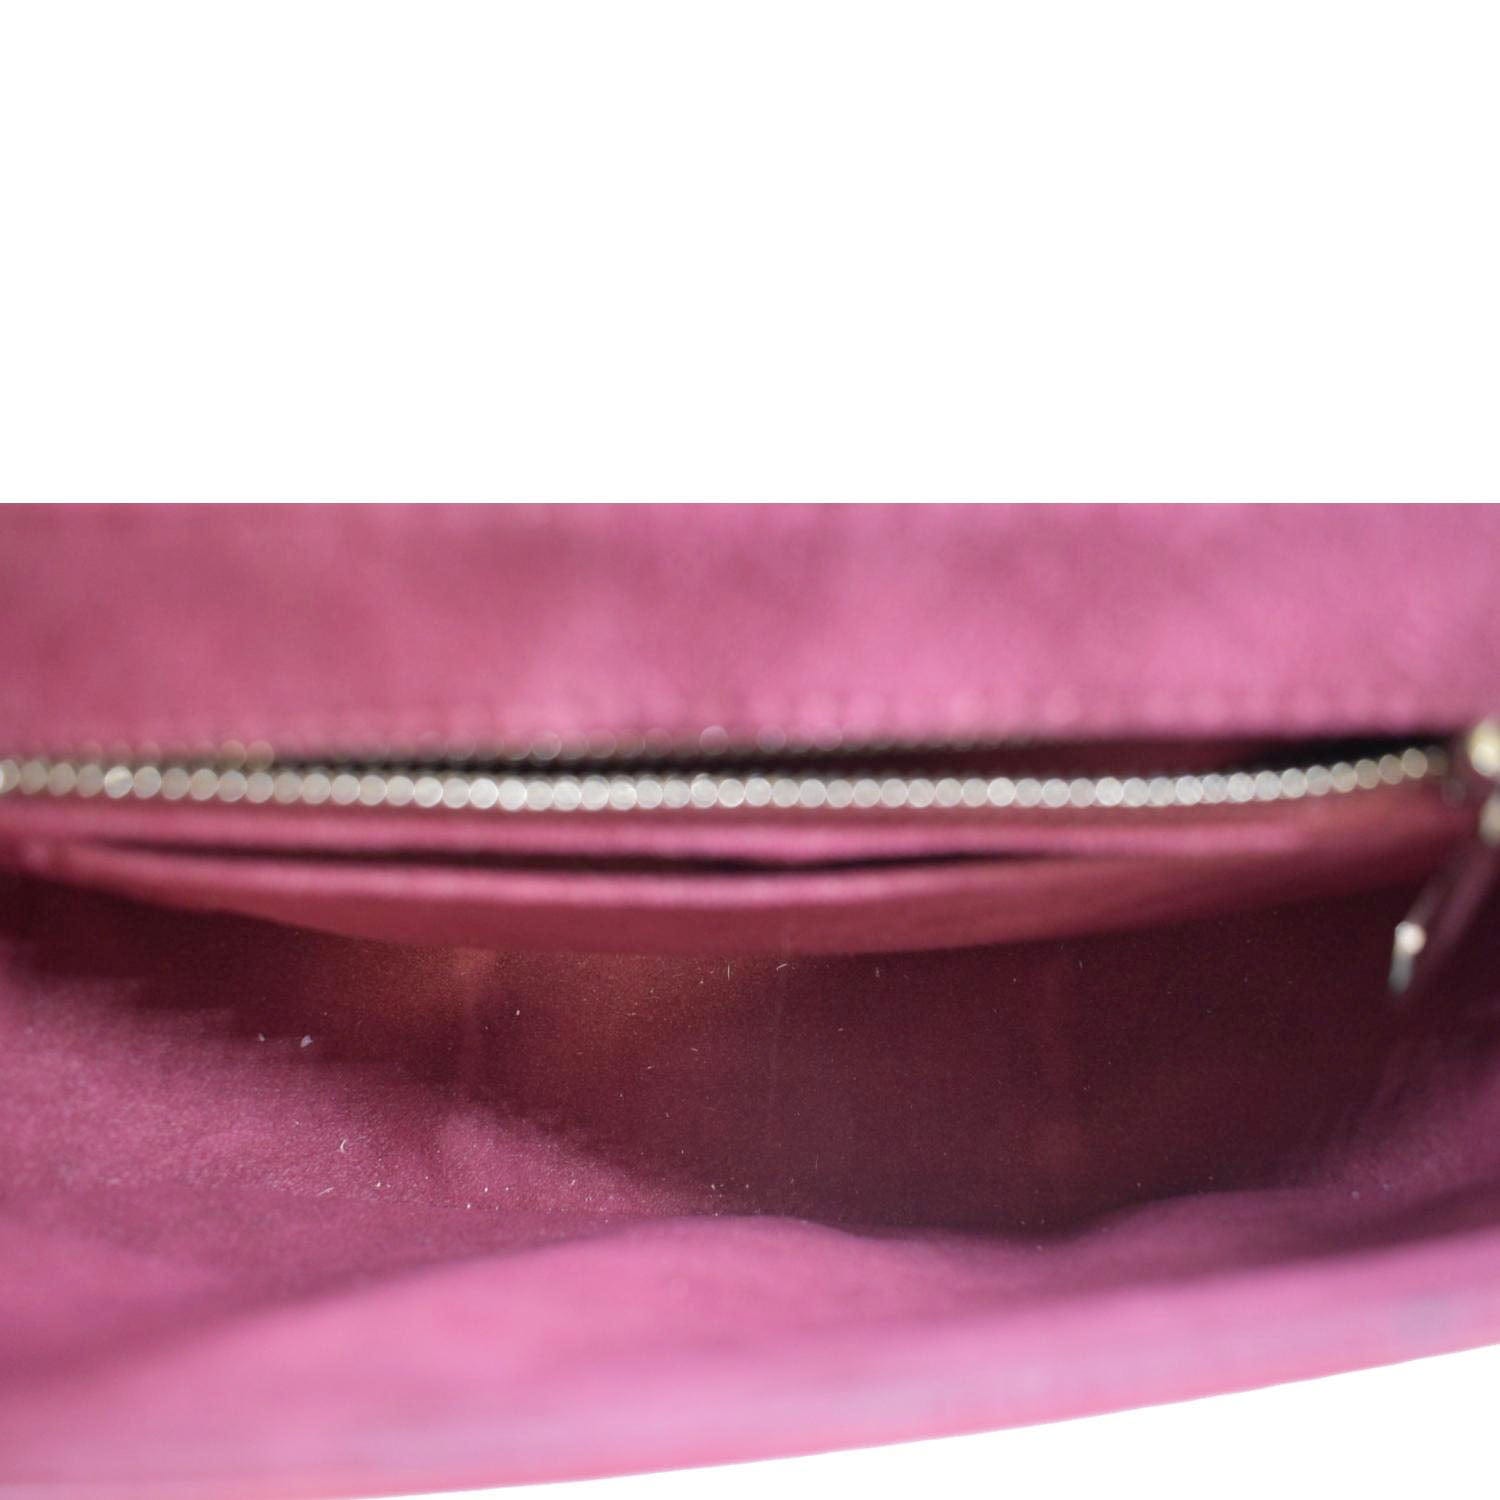 Louis Vuitton Eden PM EPI Leather Shoulder Bag